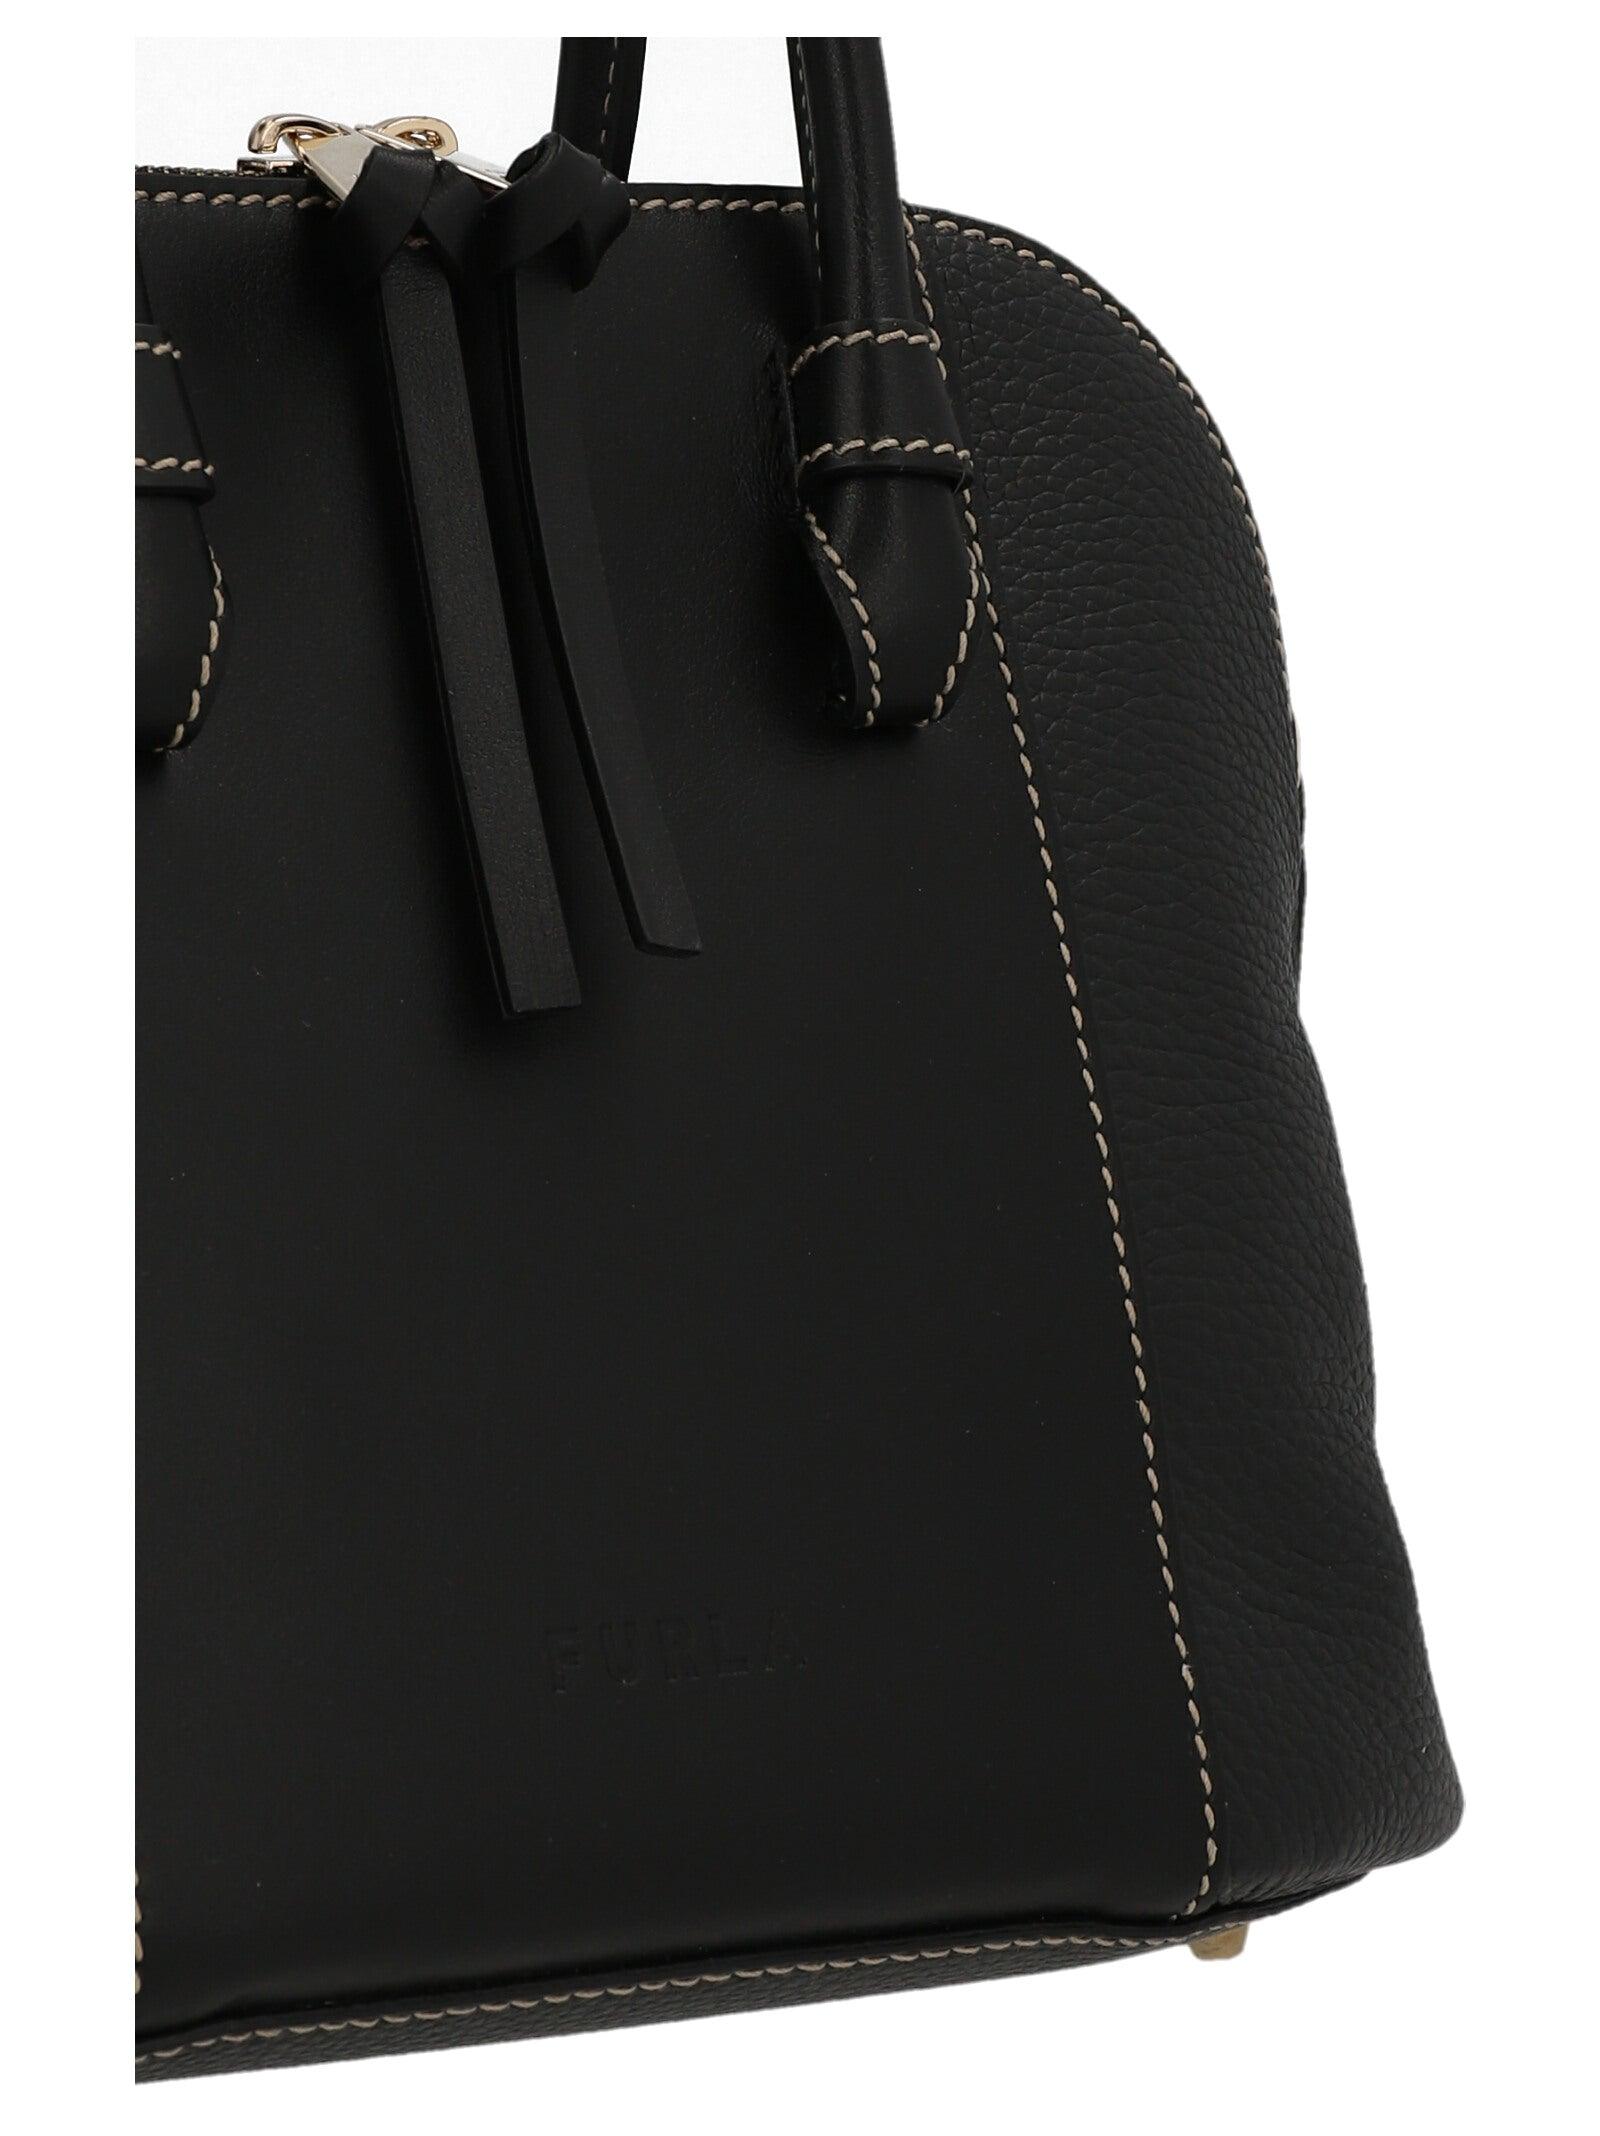 Furla Mia Stella S Dome Handbag in Black | Lyst